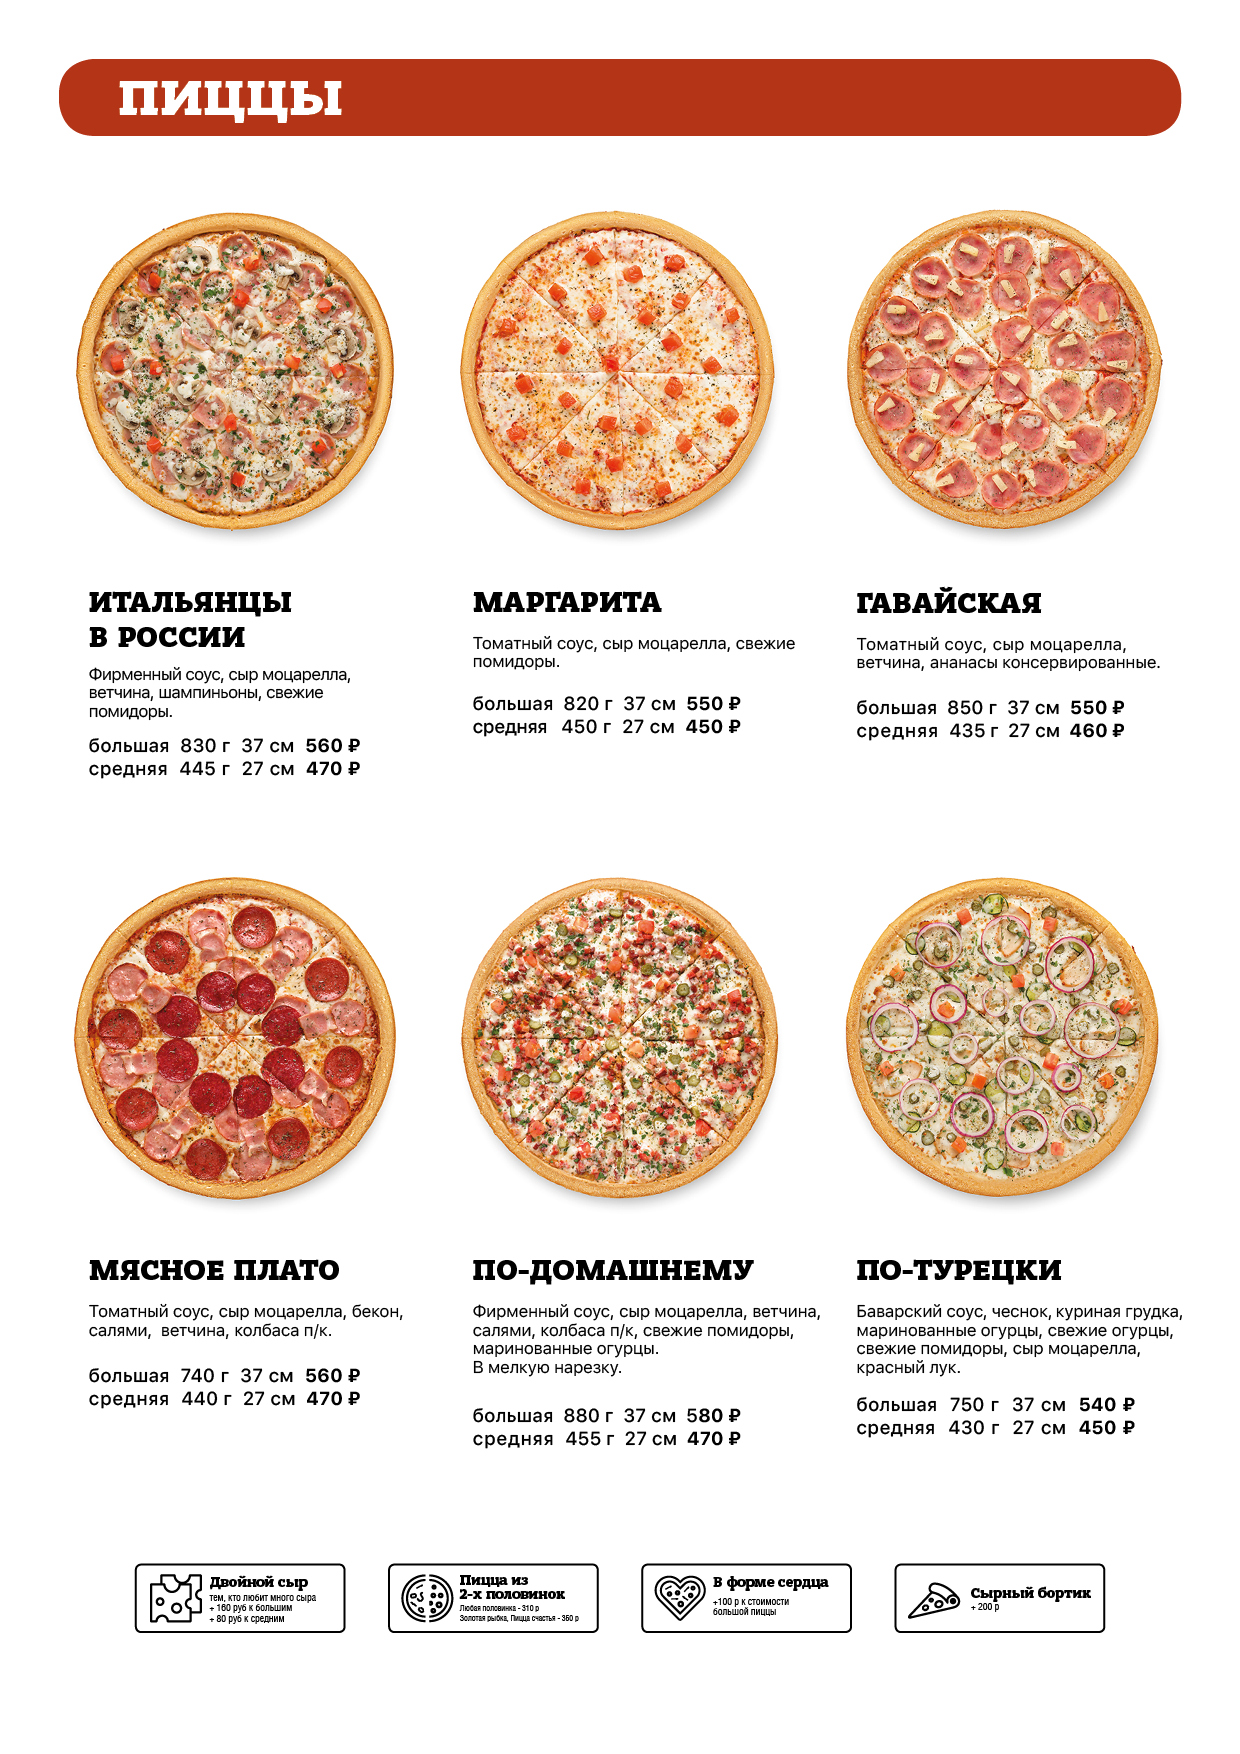 сколько калорий в пицце гавайская 1 кусок фото 79